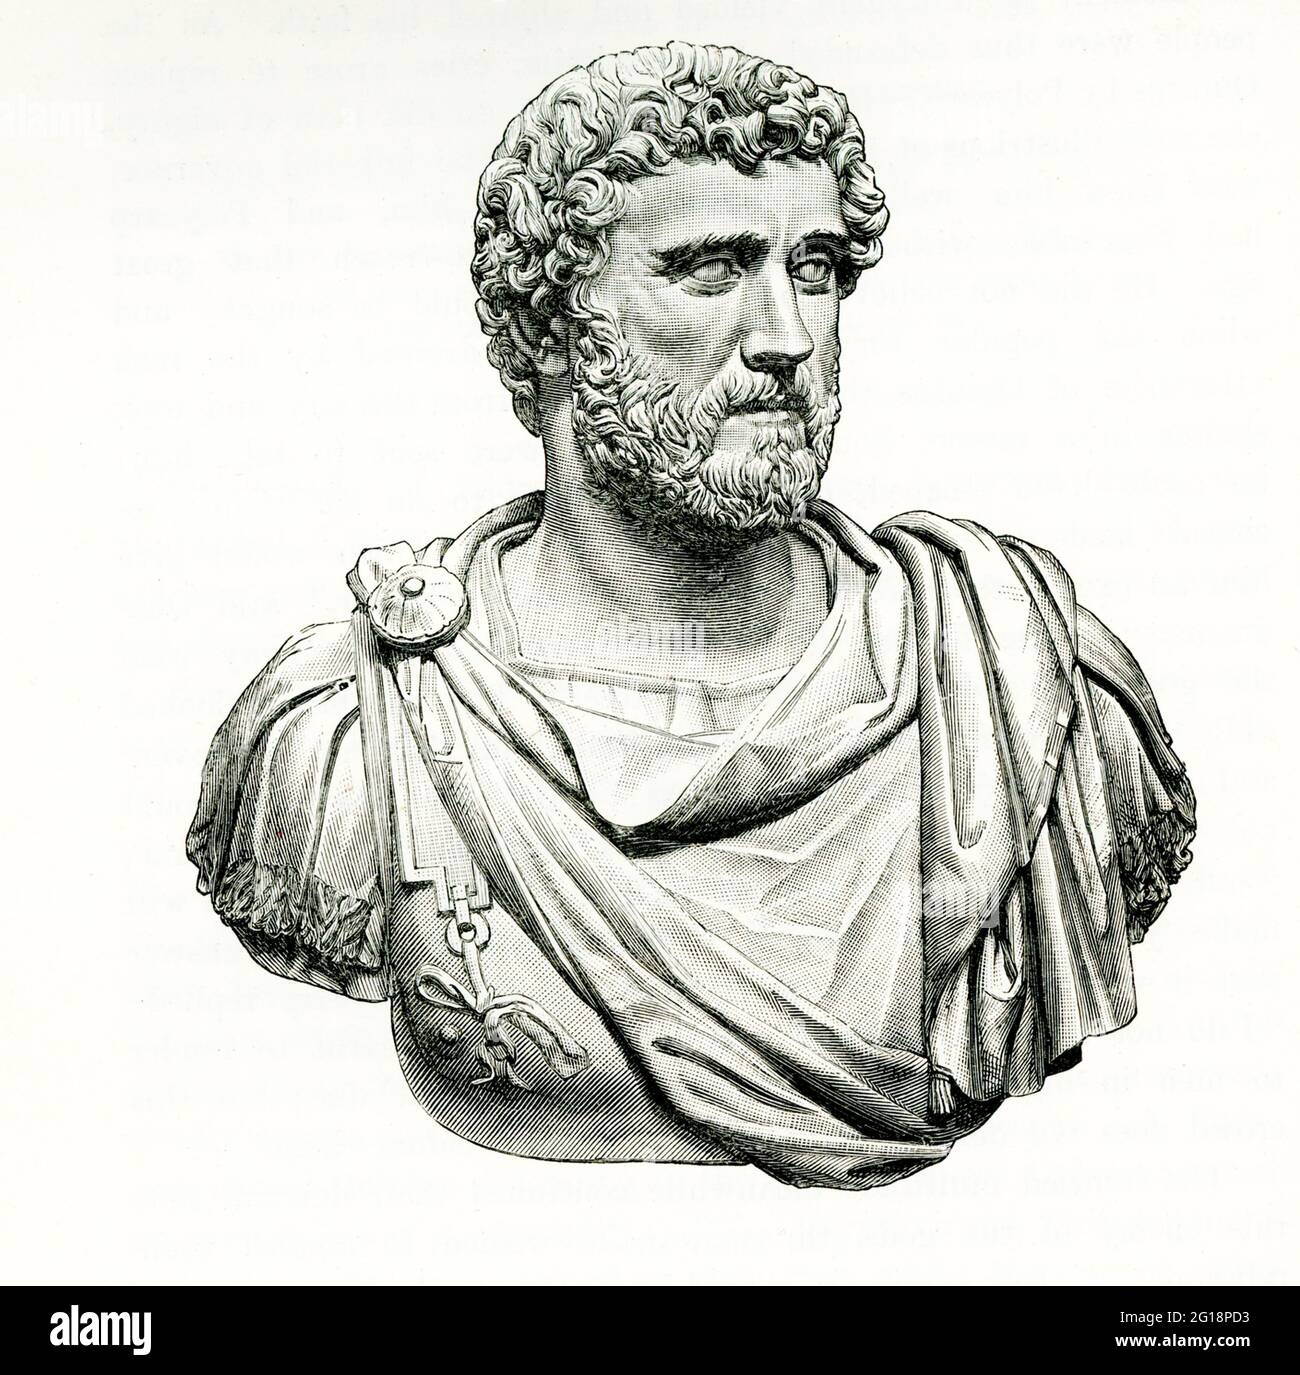 Diese Abbildung zeigt die Büste des Antoninus, die im Museum von Neapel untergebracht ist. Titus Aelius Hadrianus Antoninus Pius war von 138 bis 161 römischer Kaiser. Er war einer der fünf guten Kaiser aus der Nerva-Antonine-Dynastie. Geboren in einer senatorialen Familie, bekleidete Antoninus während der Herrschaft von Kaiser Hadrian verschiedene Ämter. Stockfoto